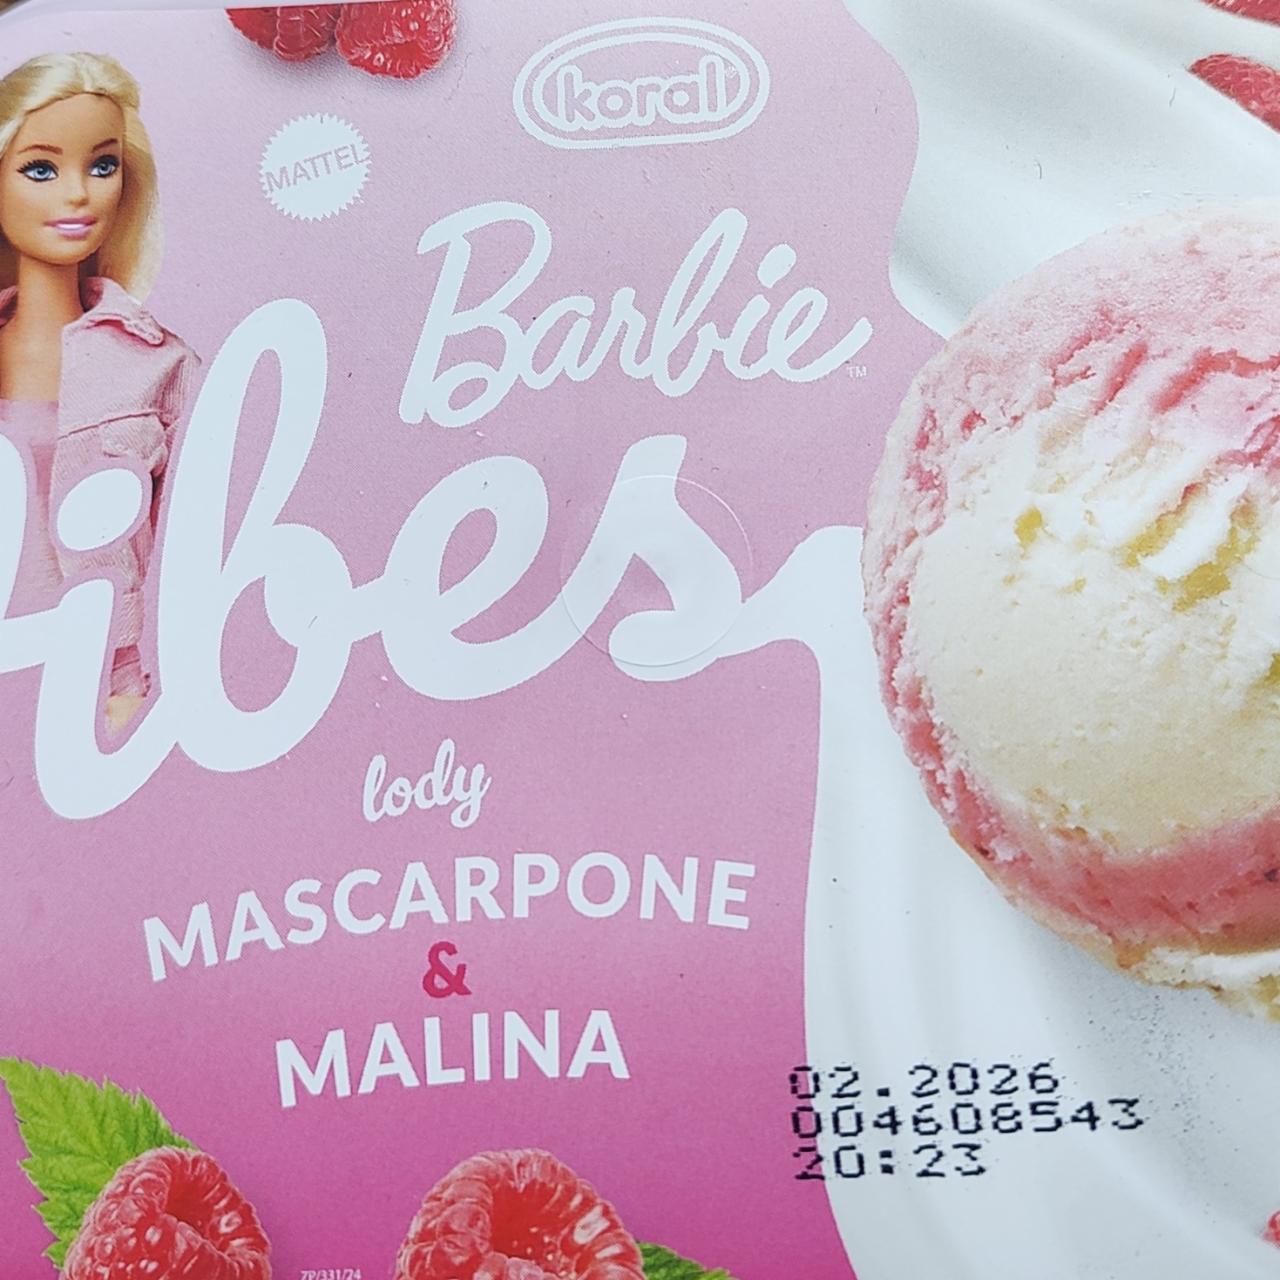 Zdjęcia - Barbie vibes lody o smaku mascarpone i maliny Koral